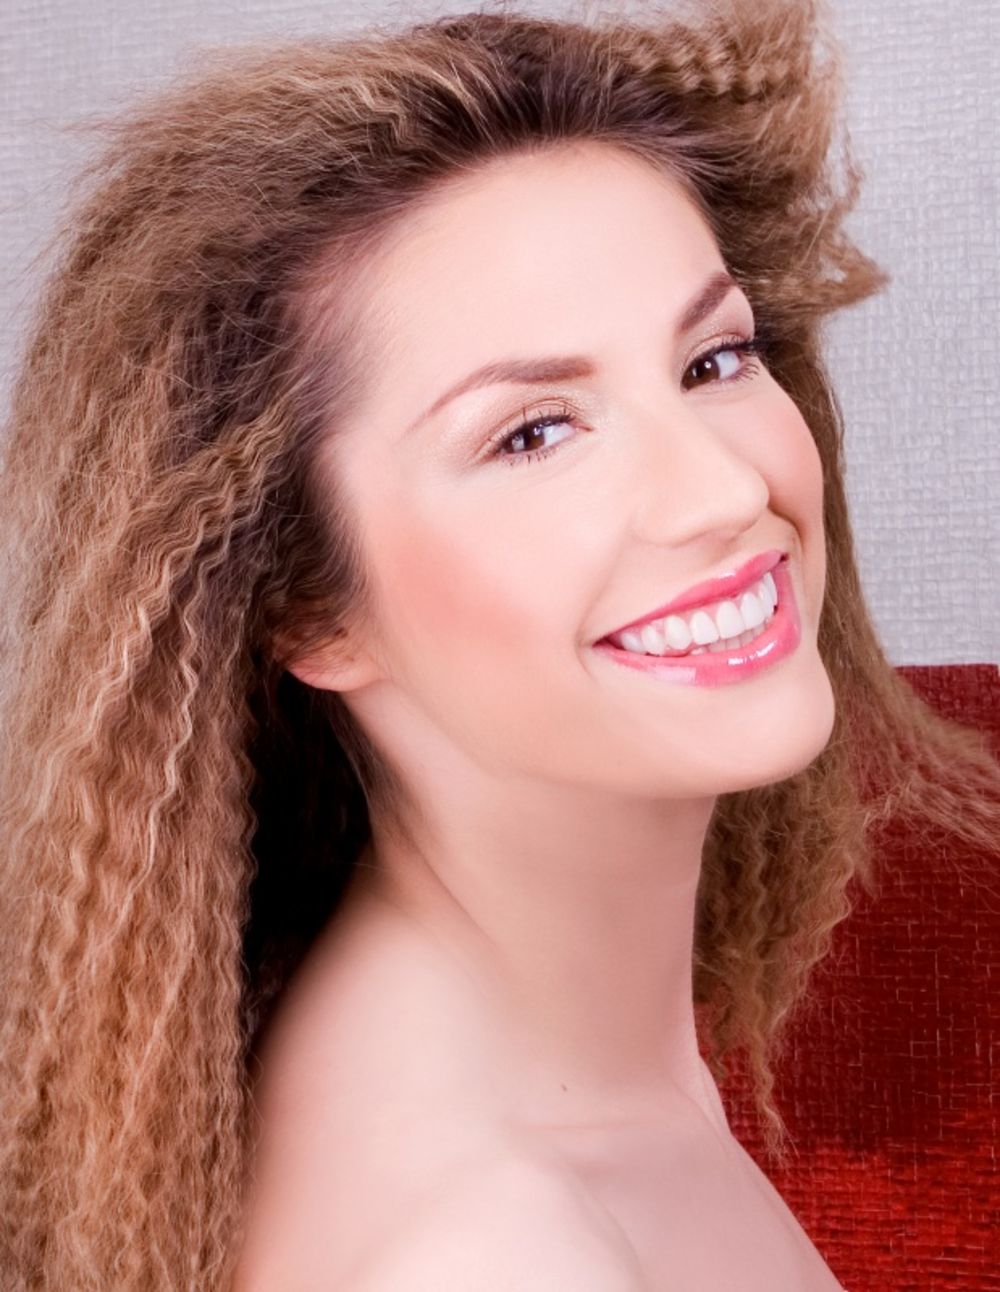 Eksperimente sa frizurama i intenzivnom šminkom pevačica Radmila Manojlović doživljava kao svakodnevnu kozmetičku avanturu koja joj pomaže da na sceni iznese svoje emocije i otkrije svoje raspoloženje